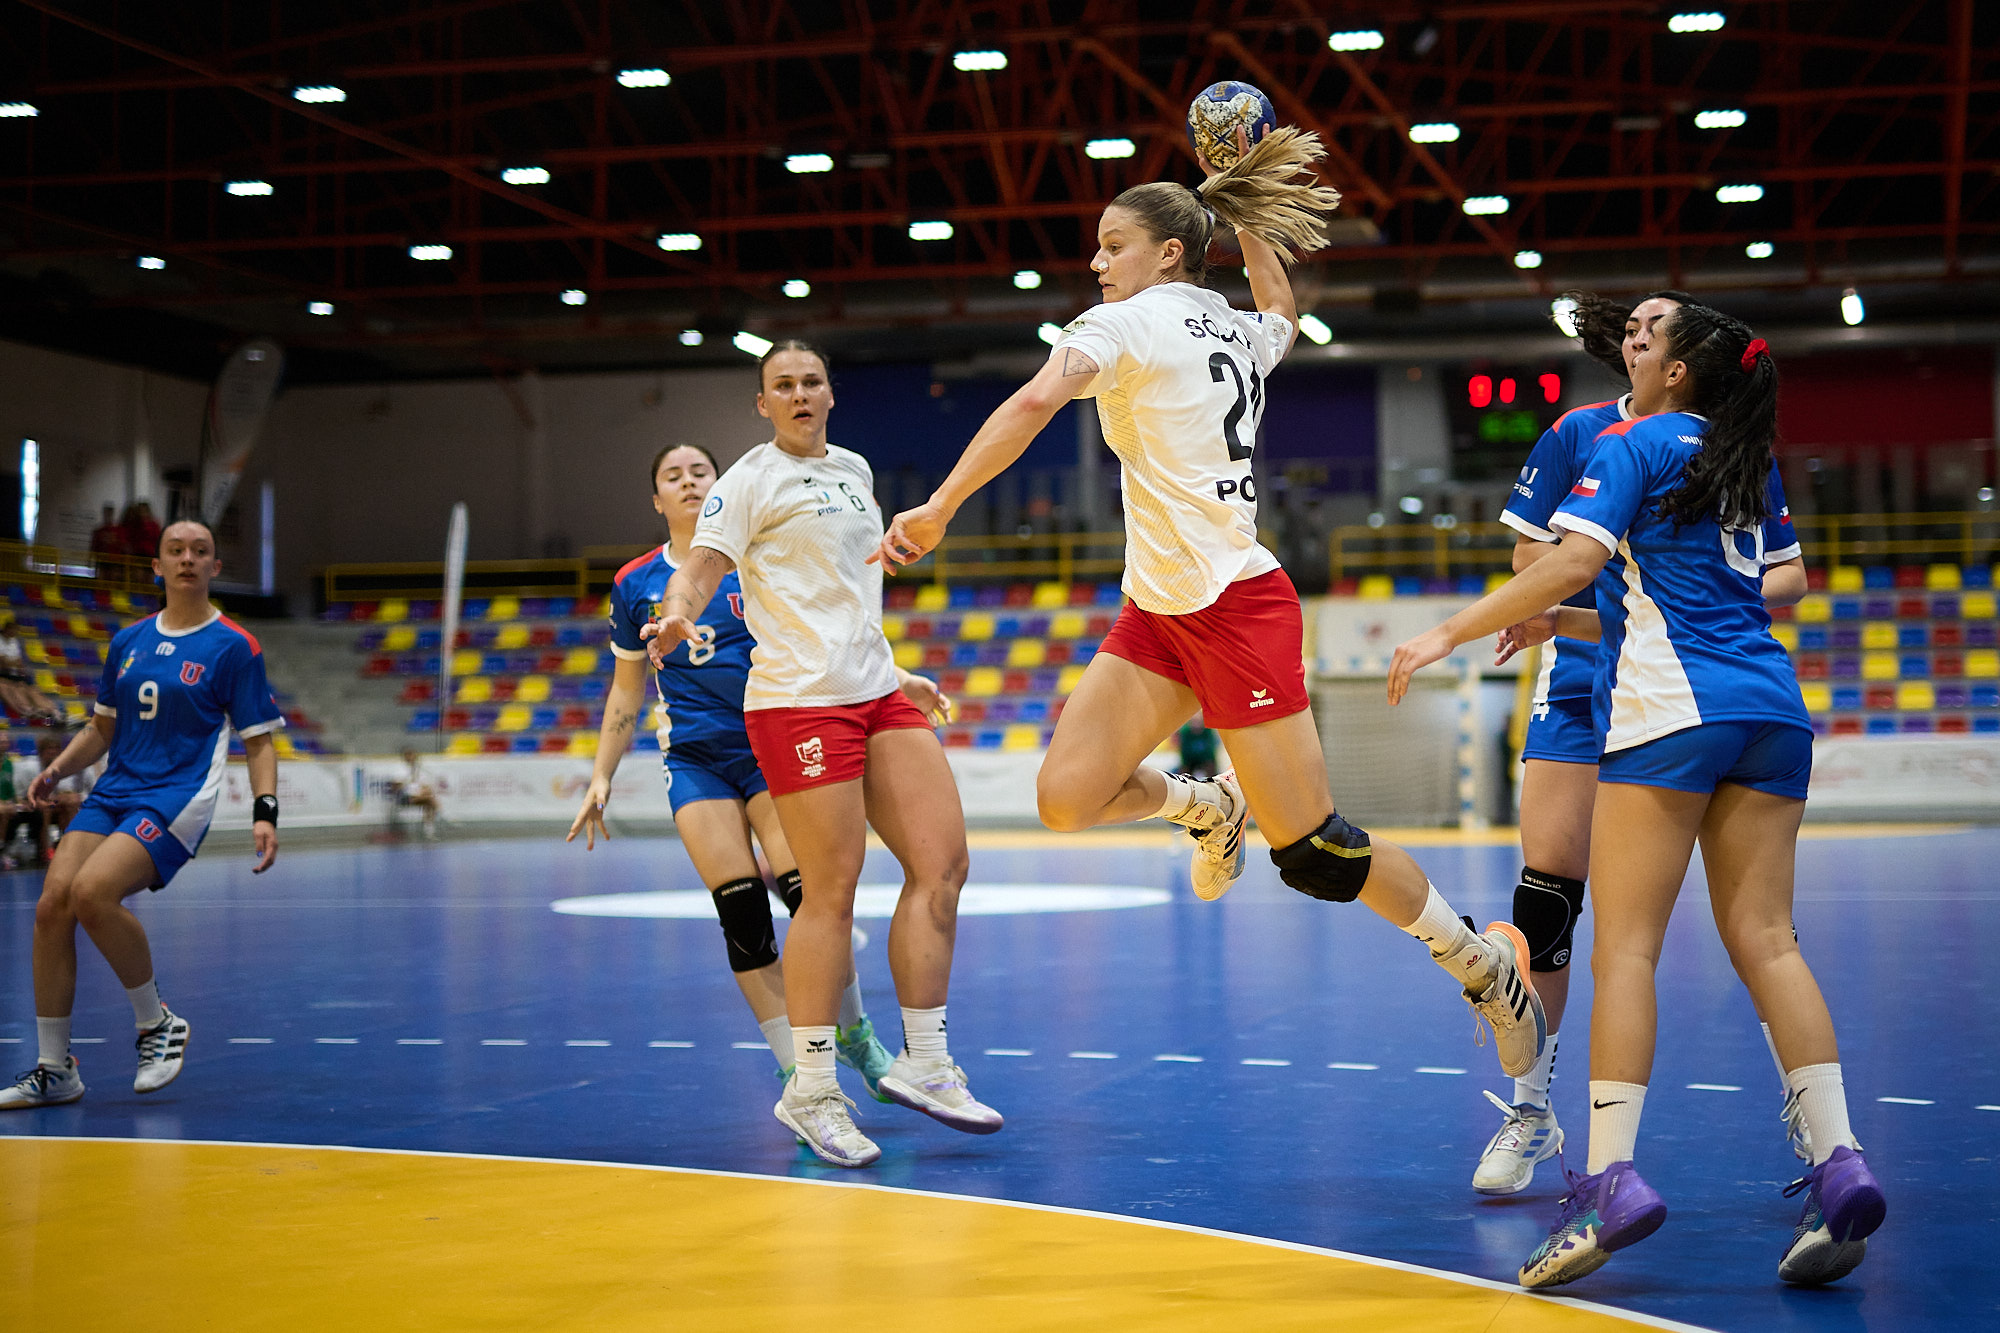 Chequia, Francia, Polonia y España destacan tanto en competiciones masculinas como femeninas